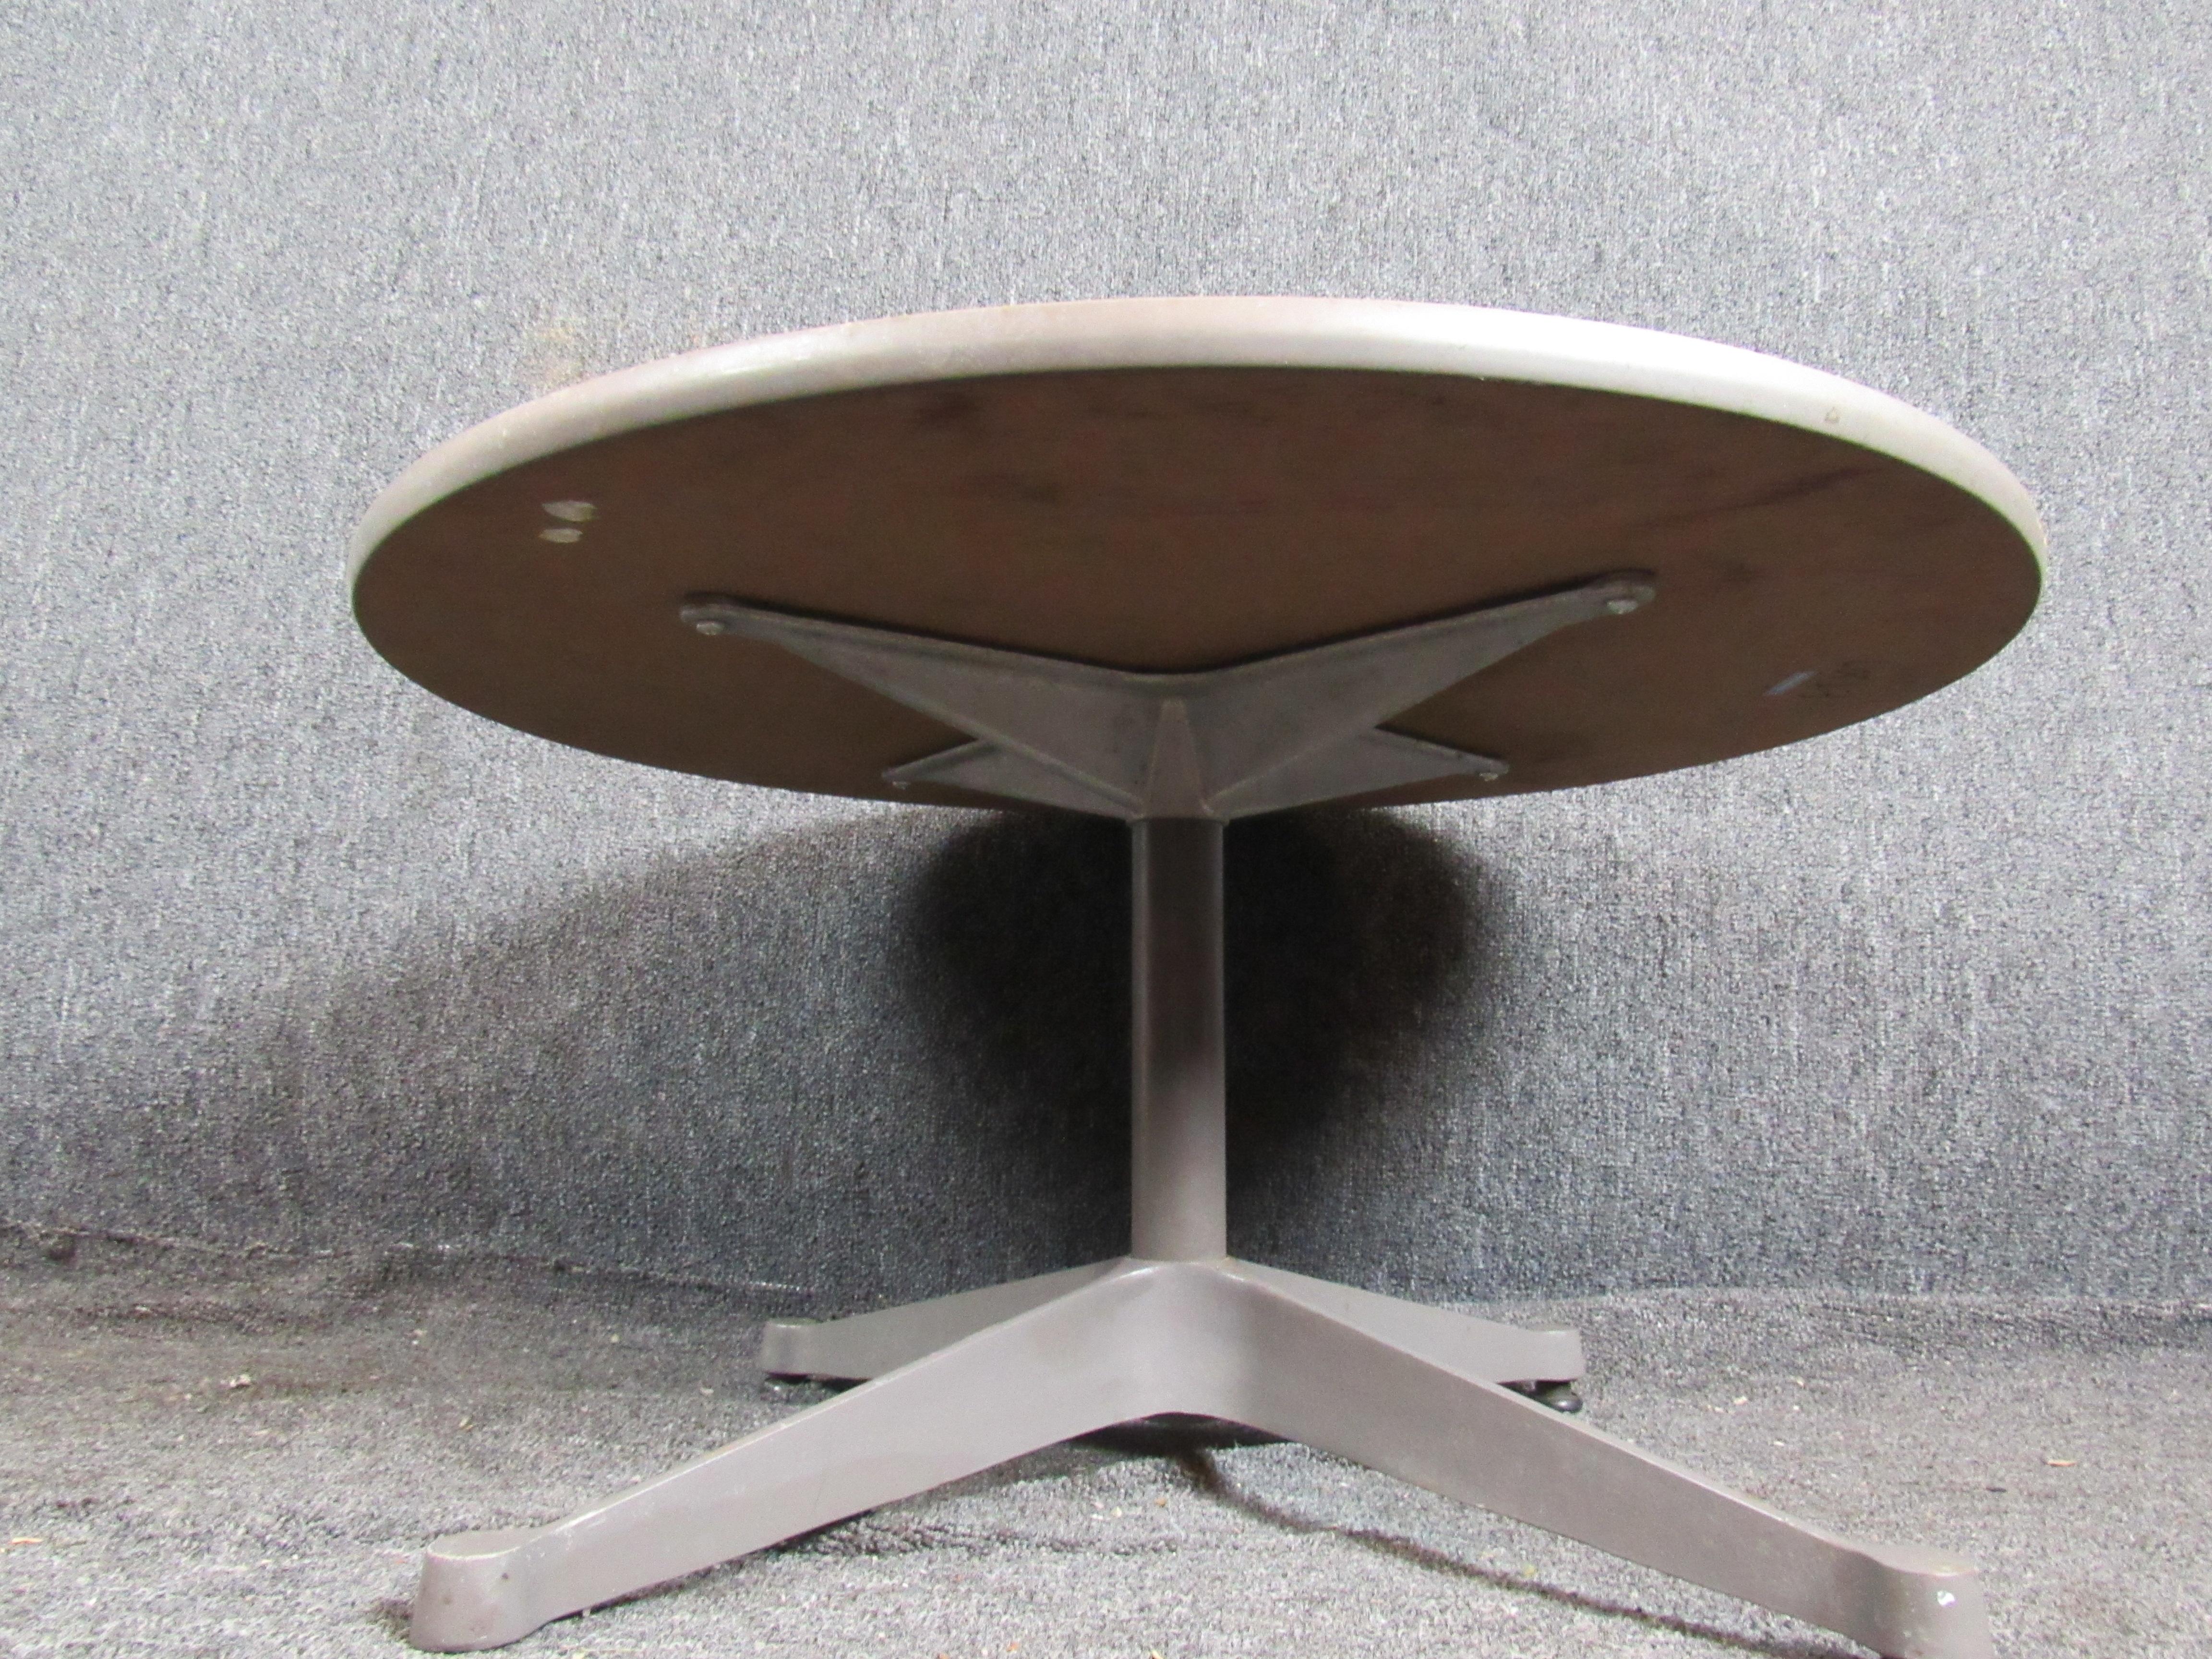 Une formidable petite table industrielle qui peut être utilisée de multiples façons. Les pieds métalliques robustes et le plateau de 30 pouces sont parfaits pour une table basse ou une table de cocktail unique. Les couleurs neutres s'intègrent à